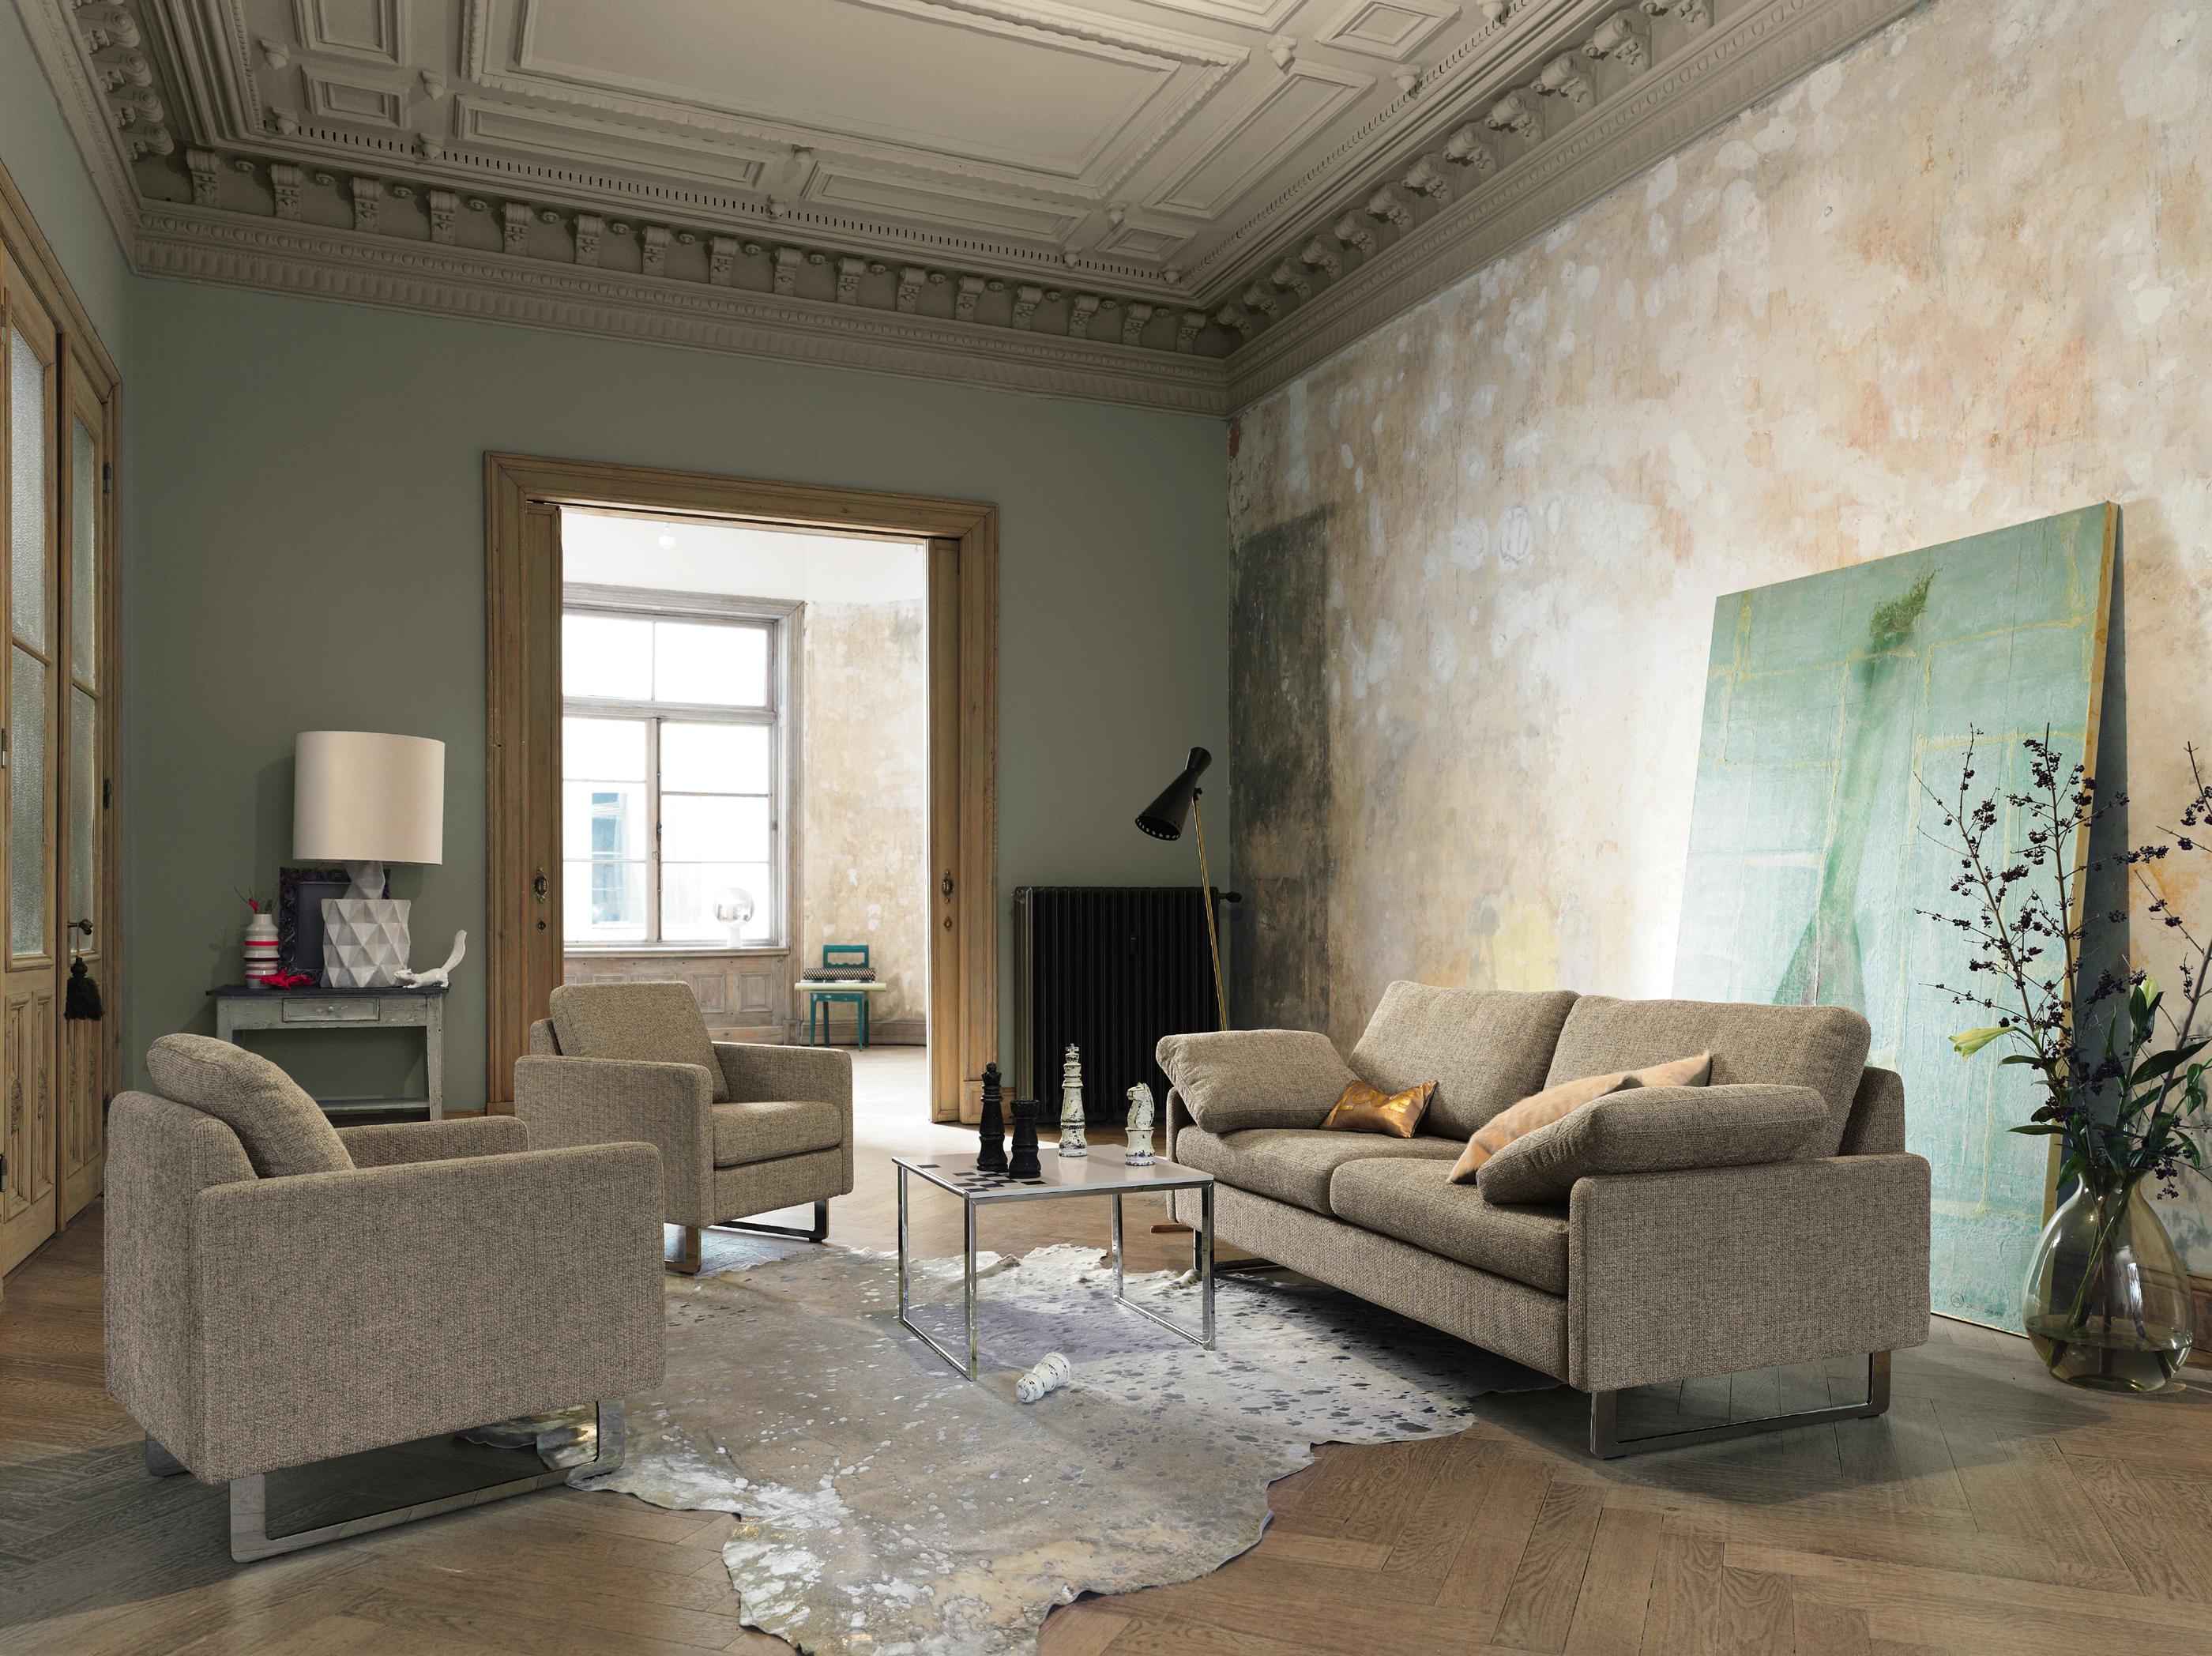 Graues Sofa kunstvoll inszeniert #couchtisch #beistelltisch #designermöbel #laminat #grauessofa #grauersessel #glasvase ©COR Sitzmöbel